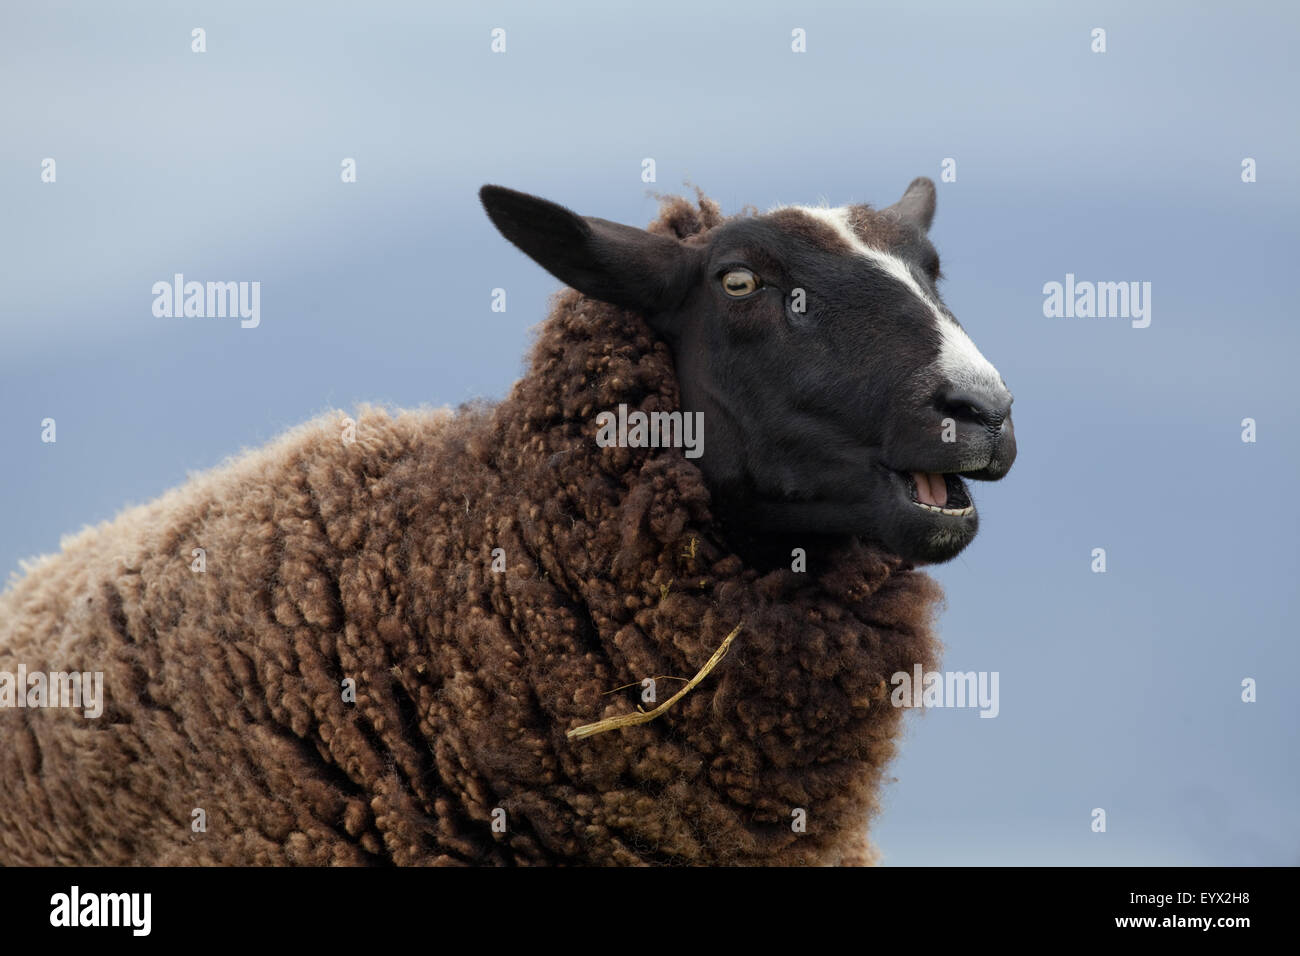 Swartbles de moutons. 'Mâchant le cud'. Race domestique originaire de la Frise, région du nord des Pays-Bas. Iona, Ecosse. Banque D'Images